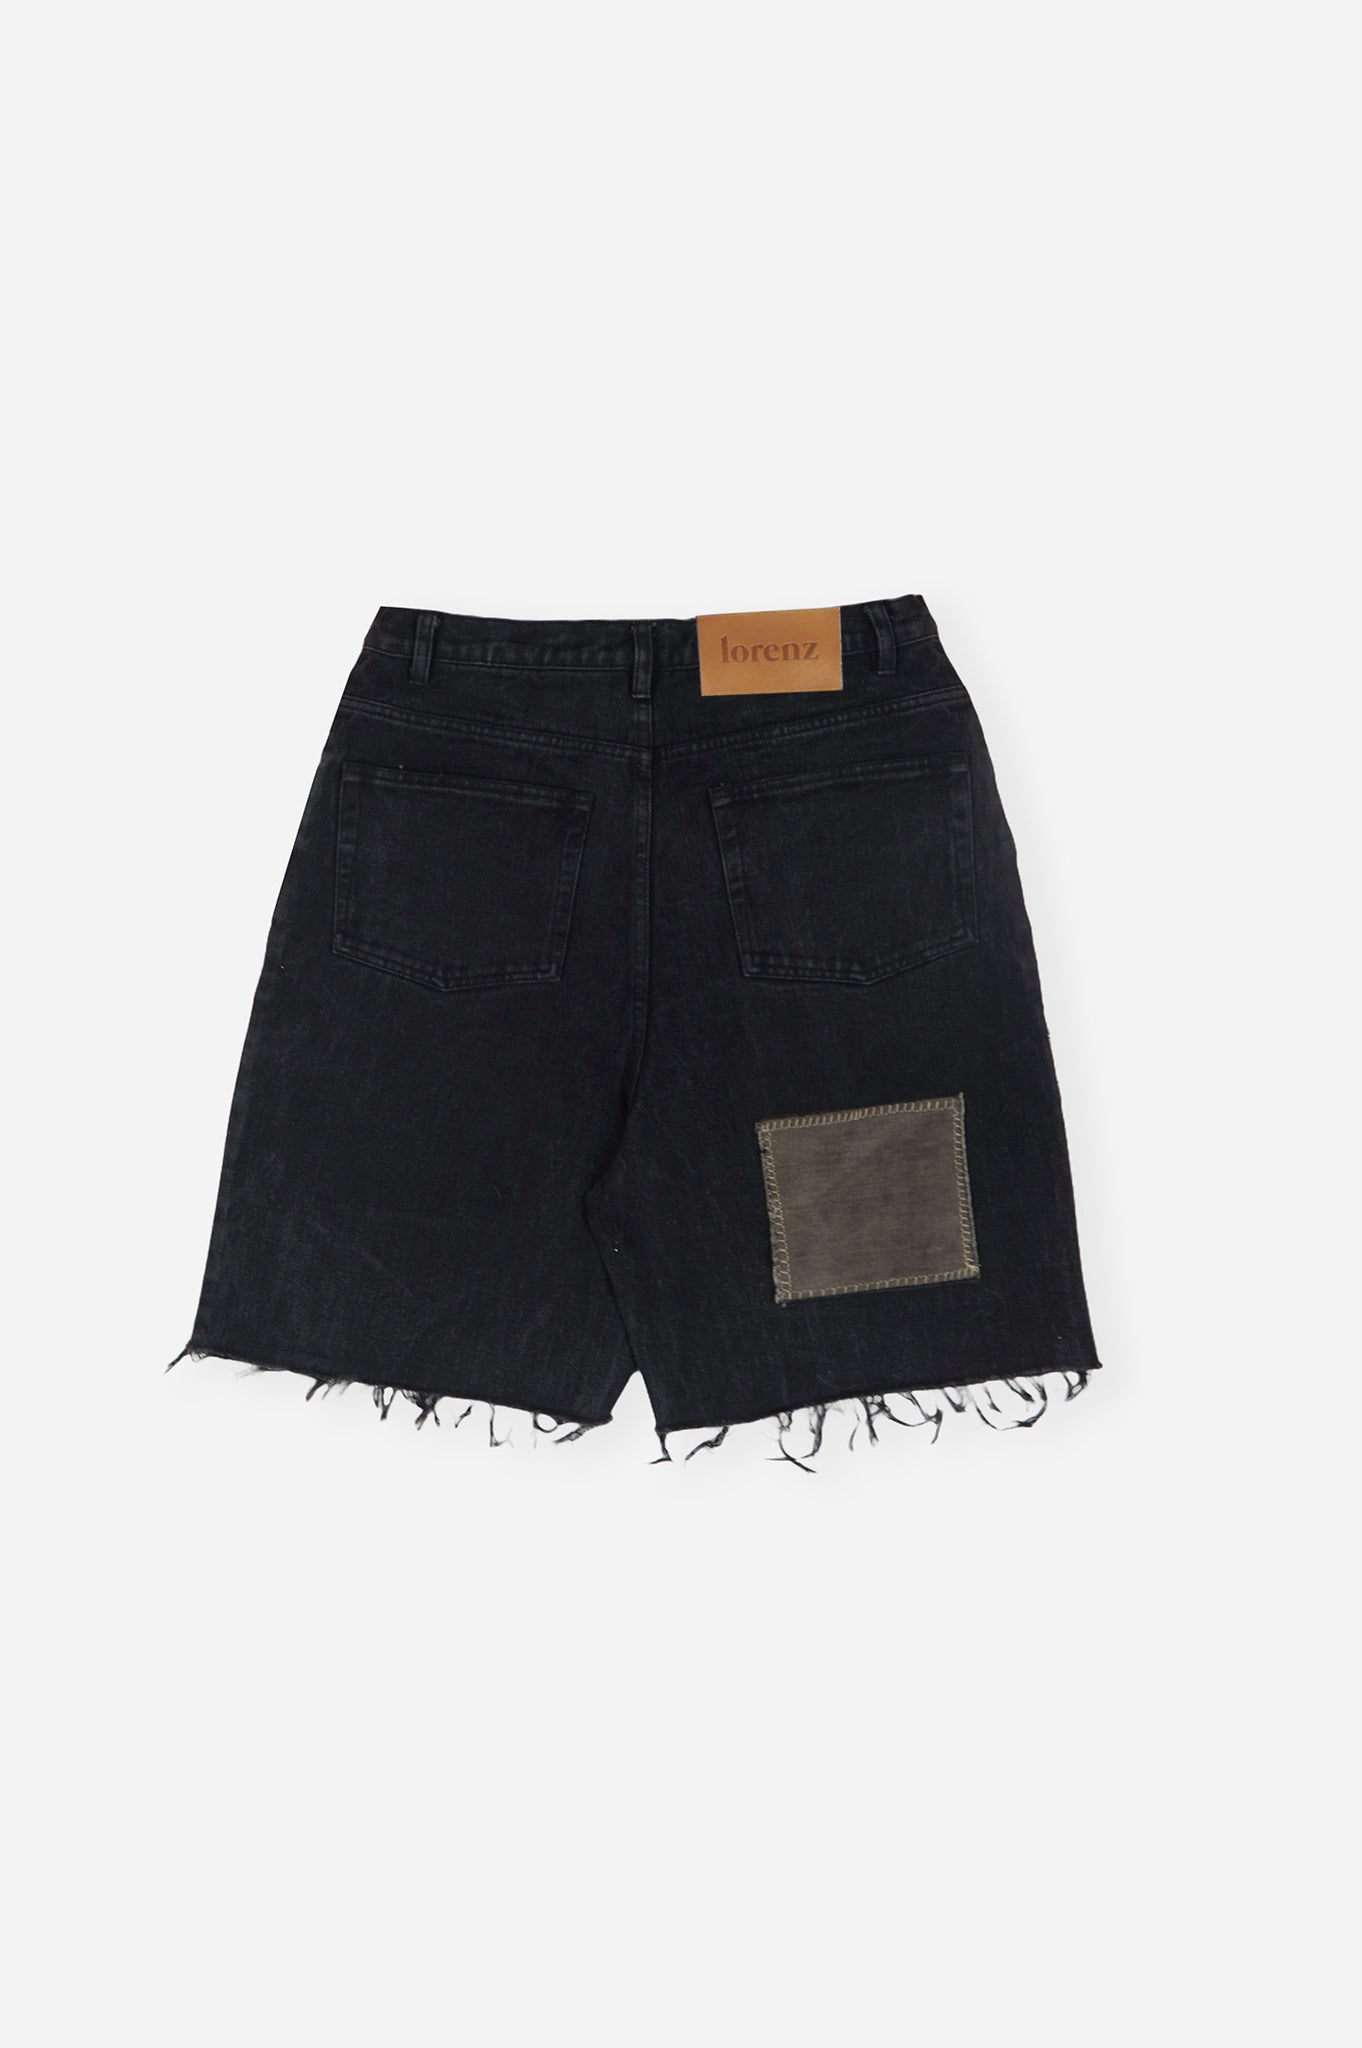 Black Patchwork Denim Shorts - Repurposed